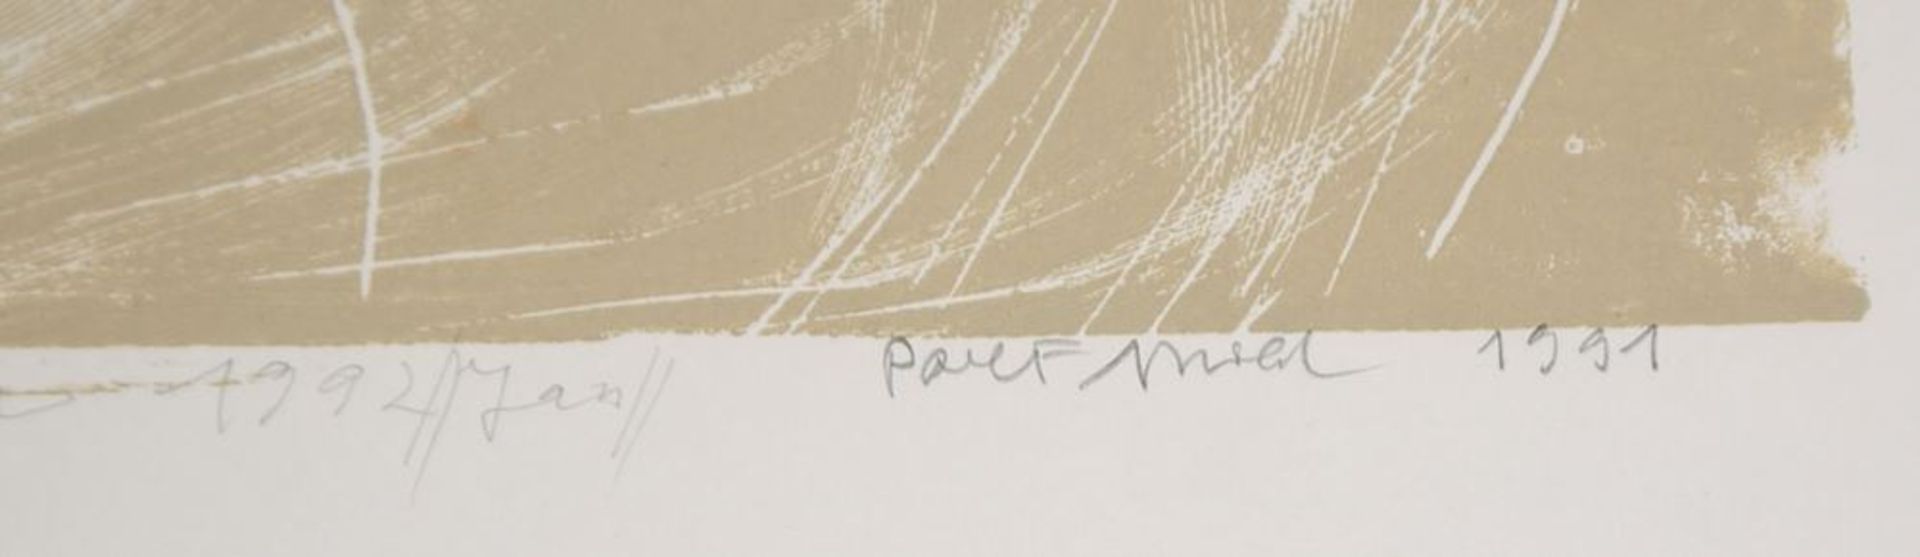 Paul Fidel Arnold, Zwei Köpfe & Figurative Komposition, 2 signierte Holzschnitte von 1991 - Bild 2 aus 4